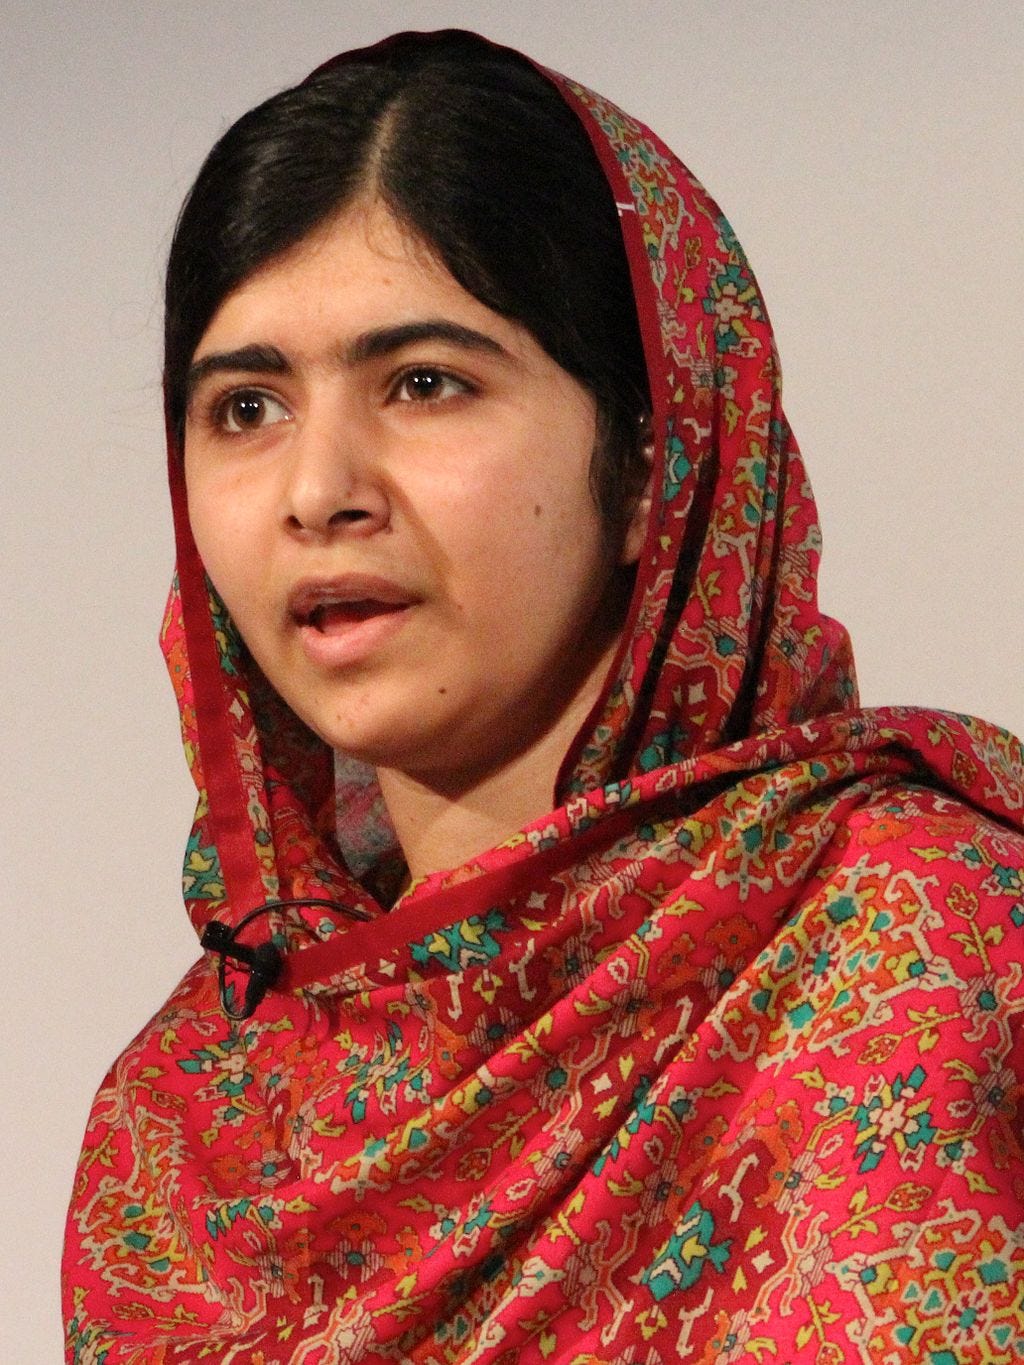 Malala speaking